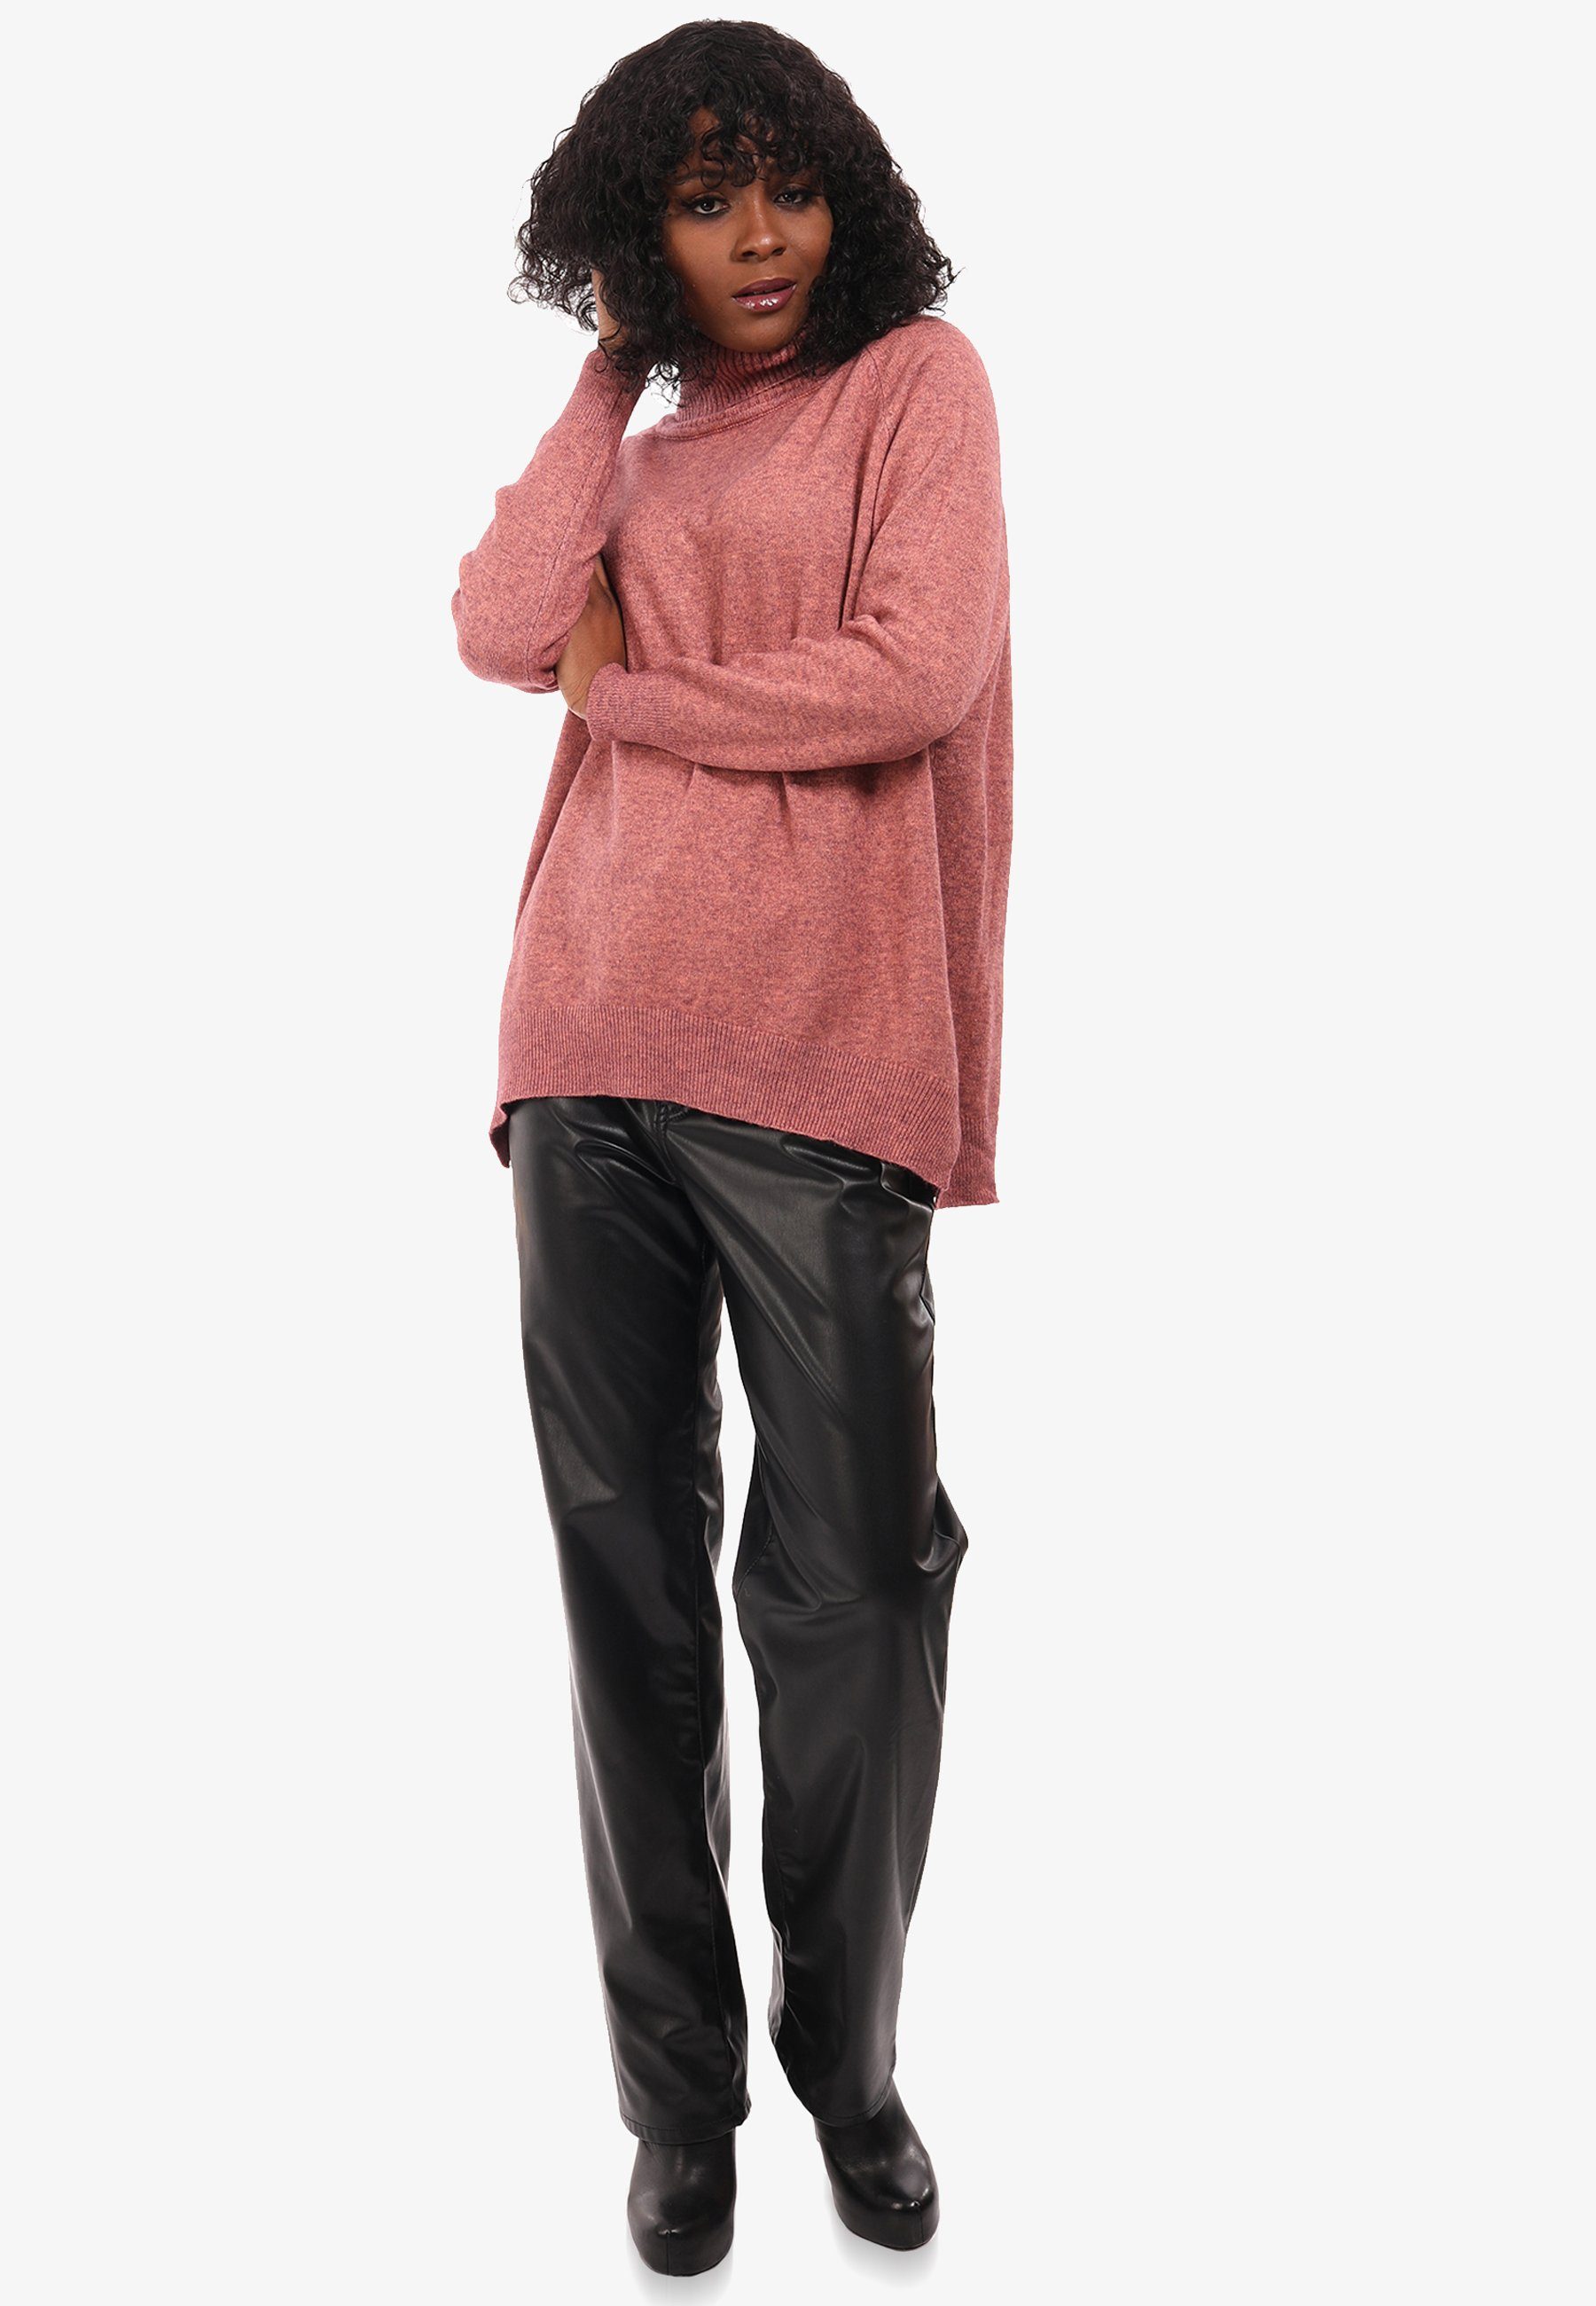 YC Fashion & Style Strickpullover Pullover aus Feinstrick mit Rollkragen in Unifarbe altrosa